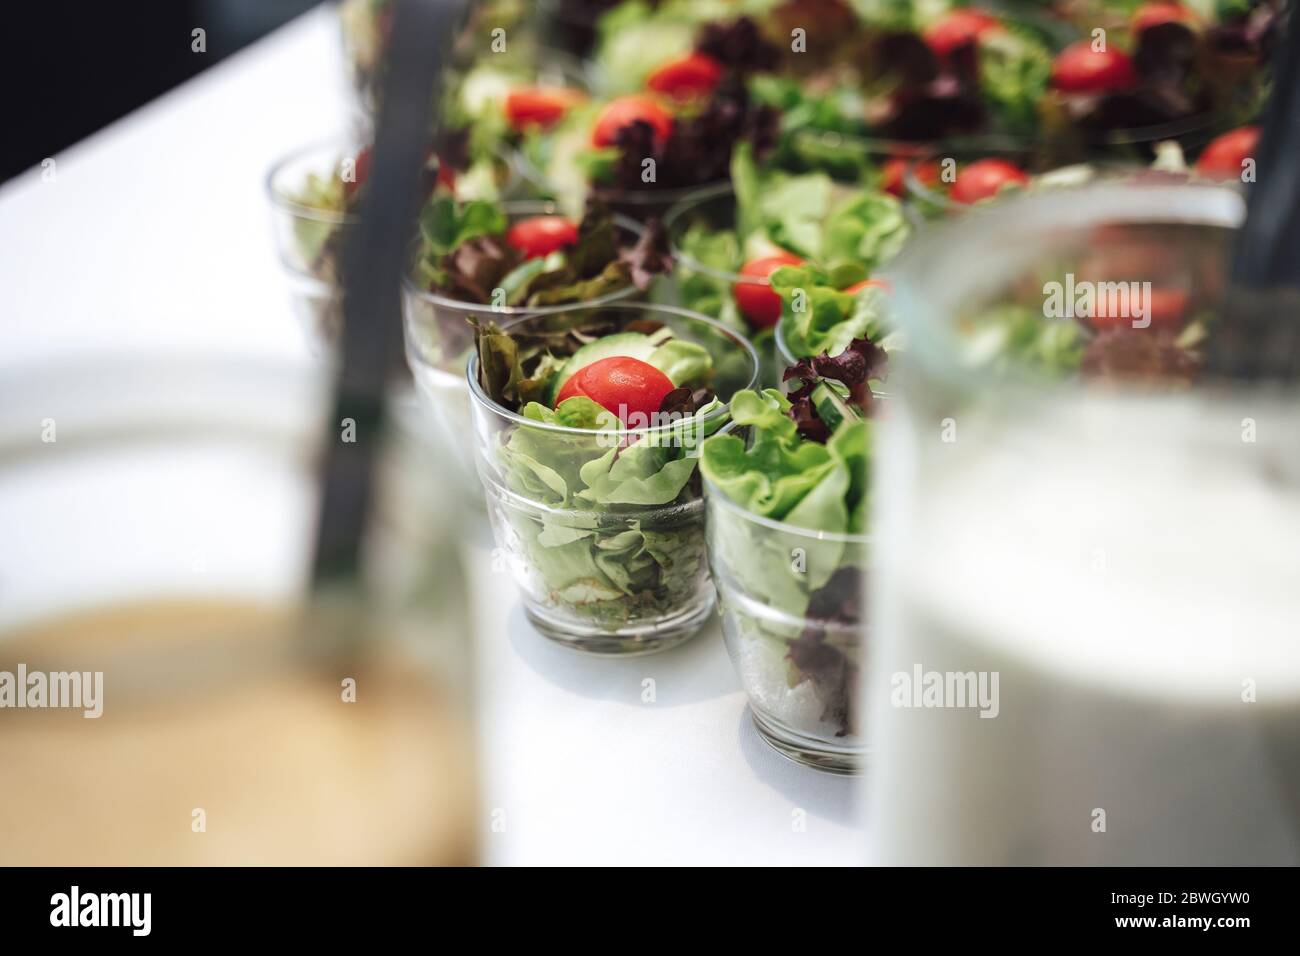 Gläser mit Gemüsesalat in Reihe. Salat, Tomaten und Gurken in Scheiben geschnitten. Feier, Party, Geburtstag oder Hochzeit Konzept. Stockfoto